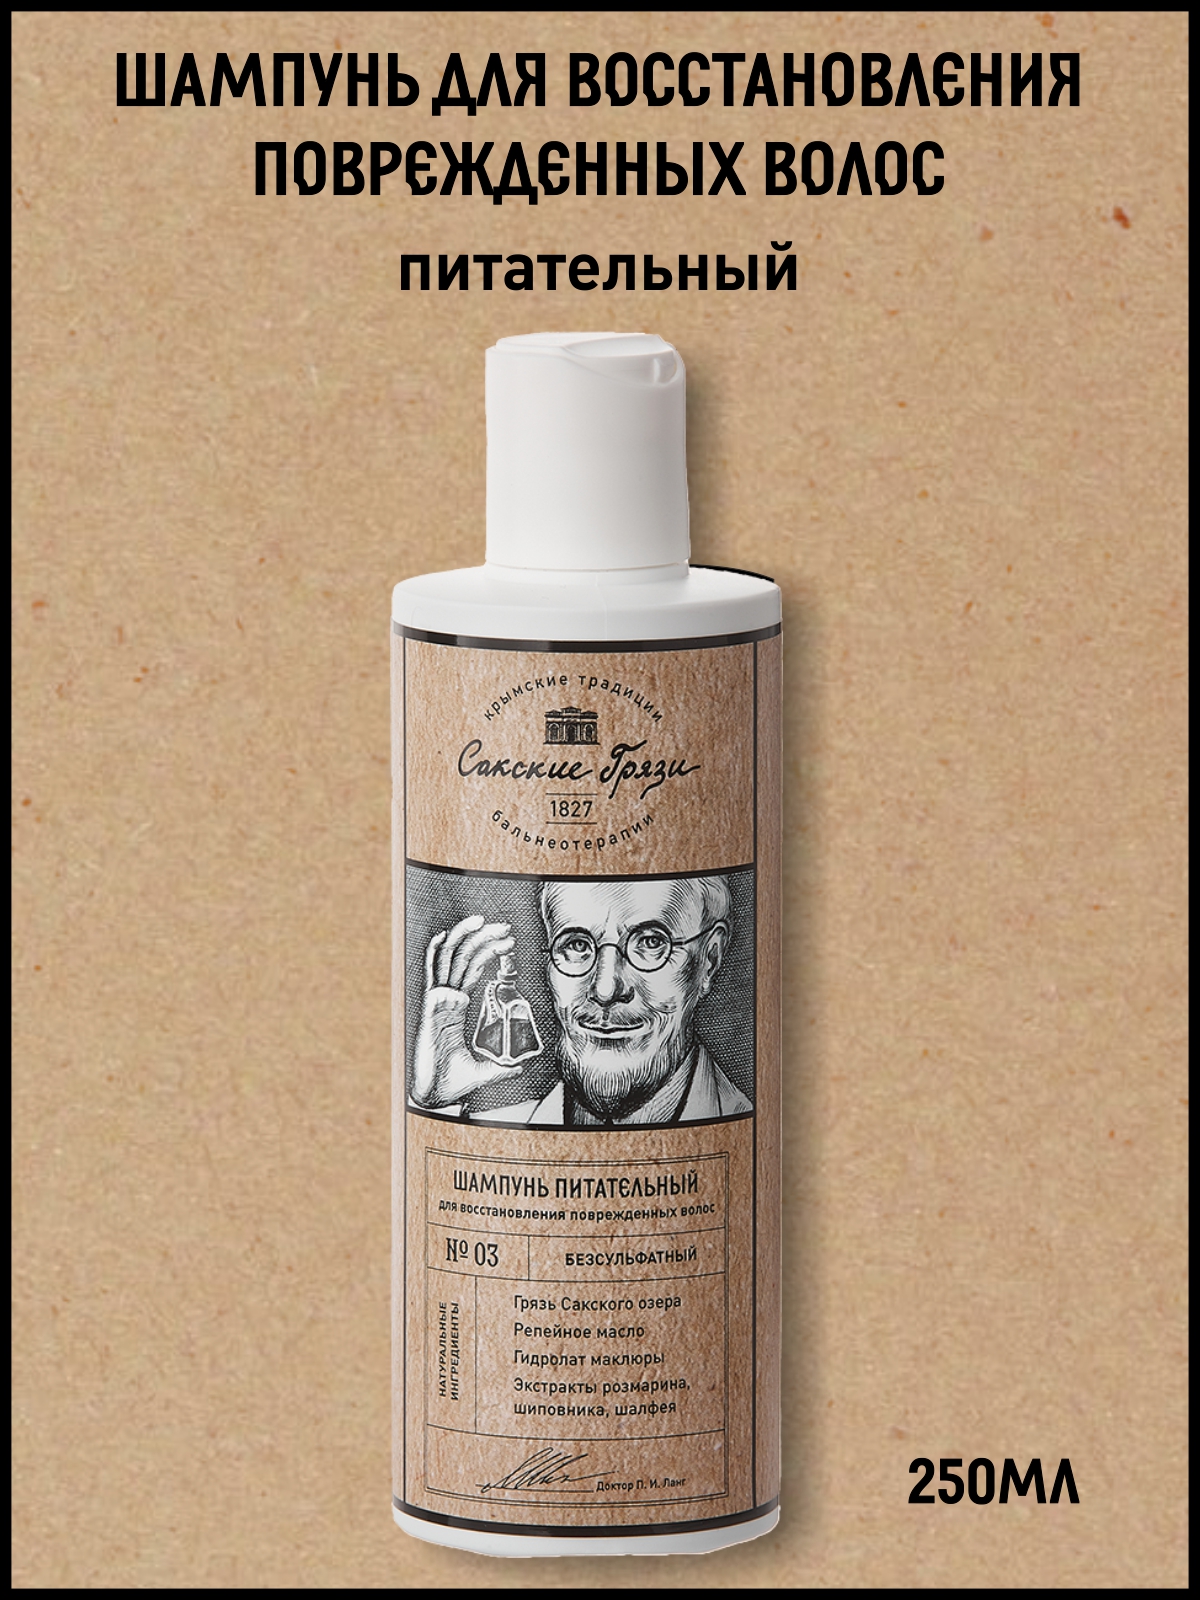 Шампунь для волос Крымские традиции бальнеотерапии восстанавливающий и питательный 250мл